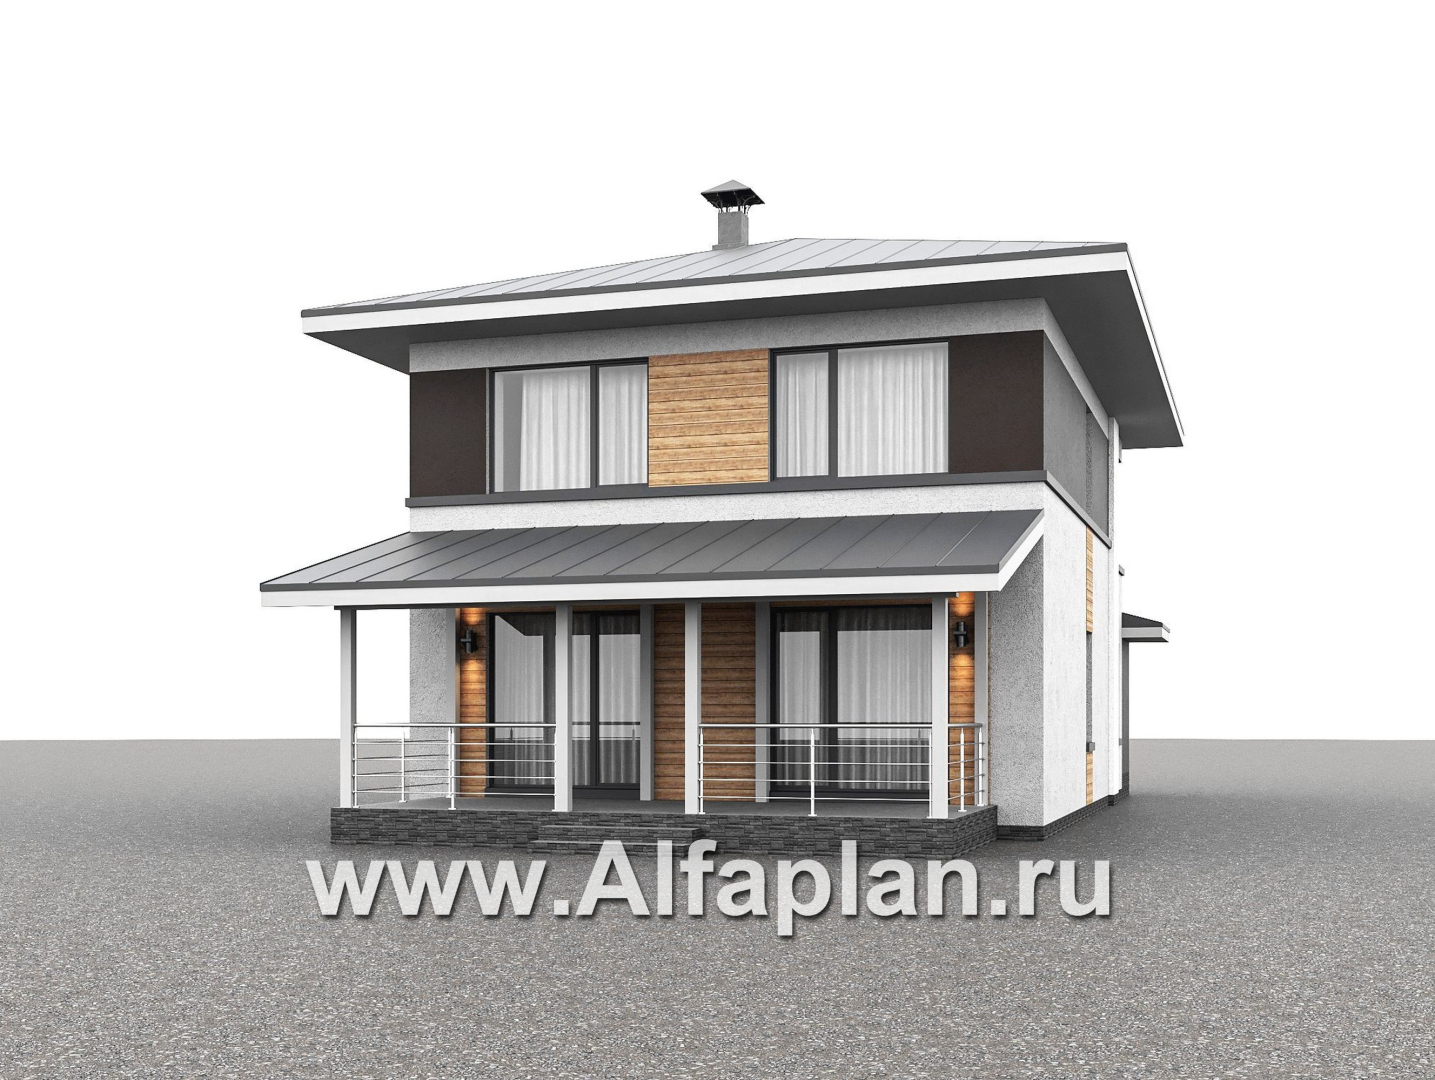 Проекты домов Альфаплан - "Генезис" - проект дома, 2 этажа, с остекленной террасой в стиле Райта - дополнительное изображение №2